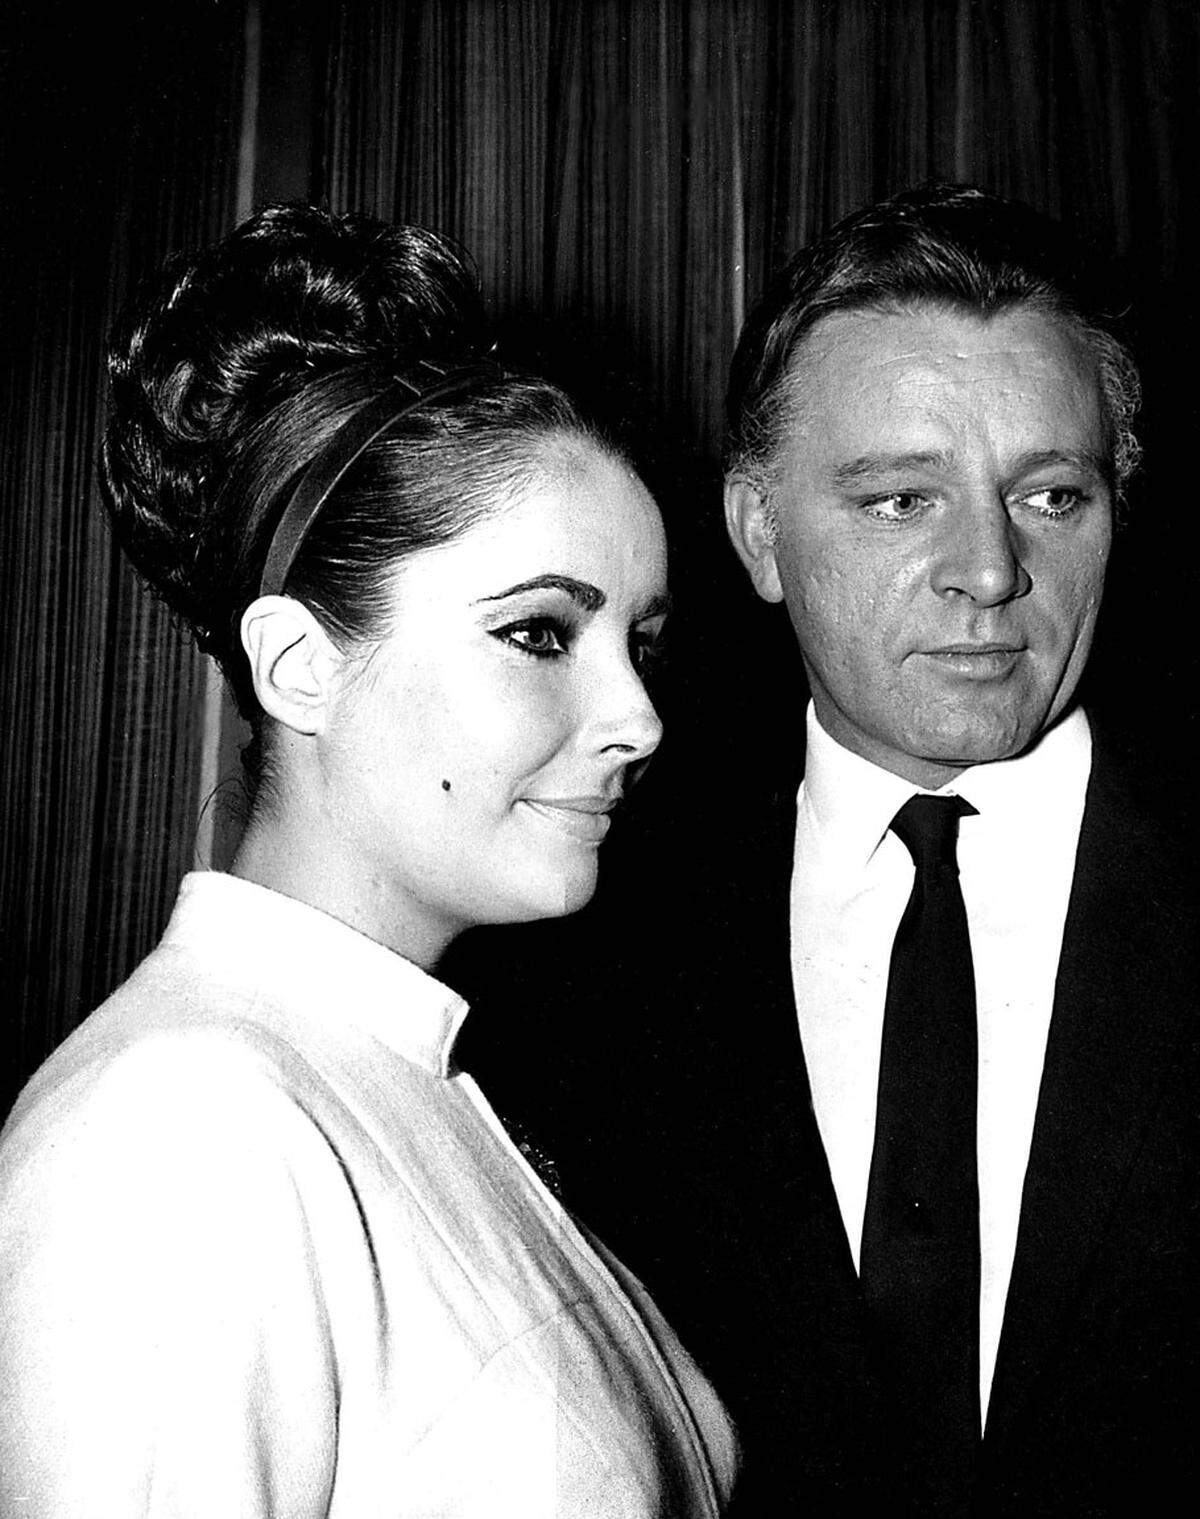 Als die Filmdiva (1932-2011) ihren Kollegen Richard Burton 1964 heiratete, war dies bereits ihre fünfte Ehe. 1974 folgte die Scheidung, ein Jahr später die zweite Hochzeit. Doch schon bald darauf trennten sie sich endgültig.